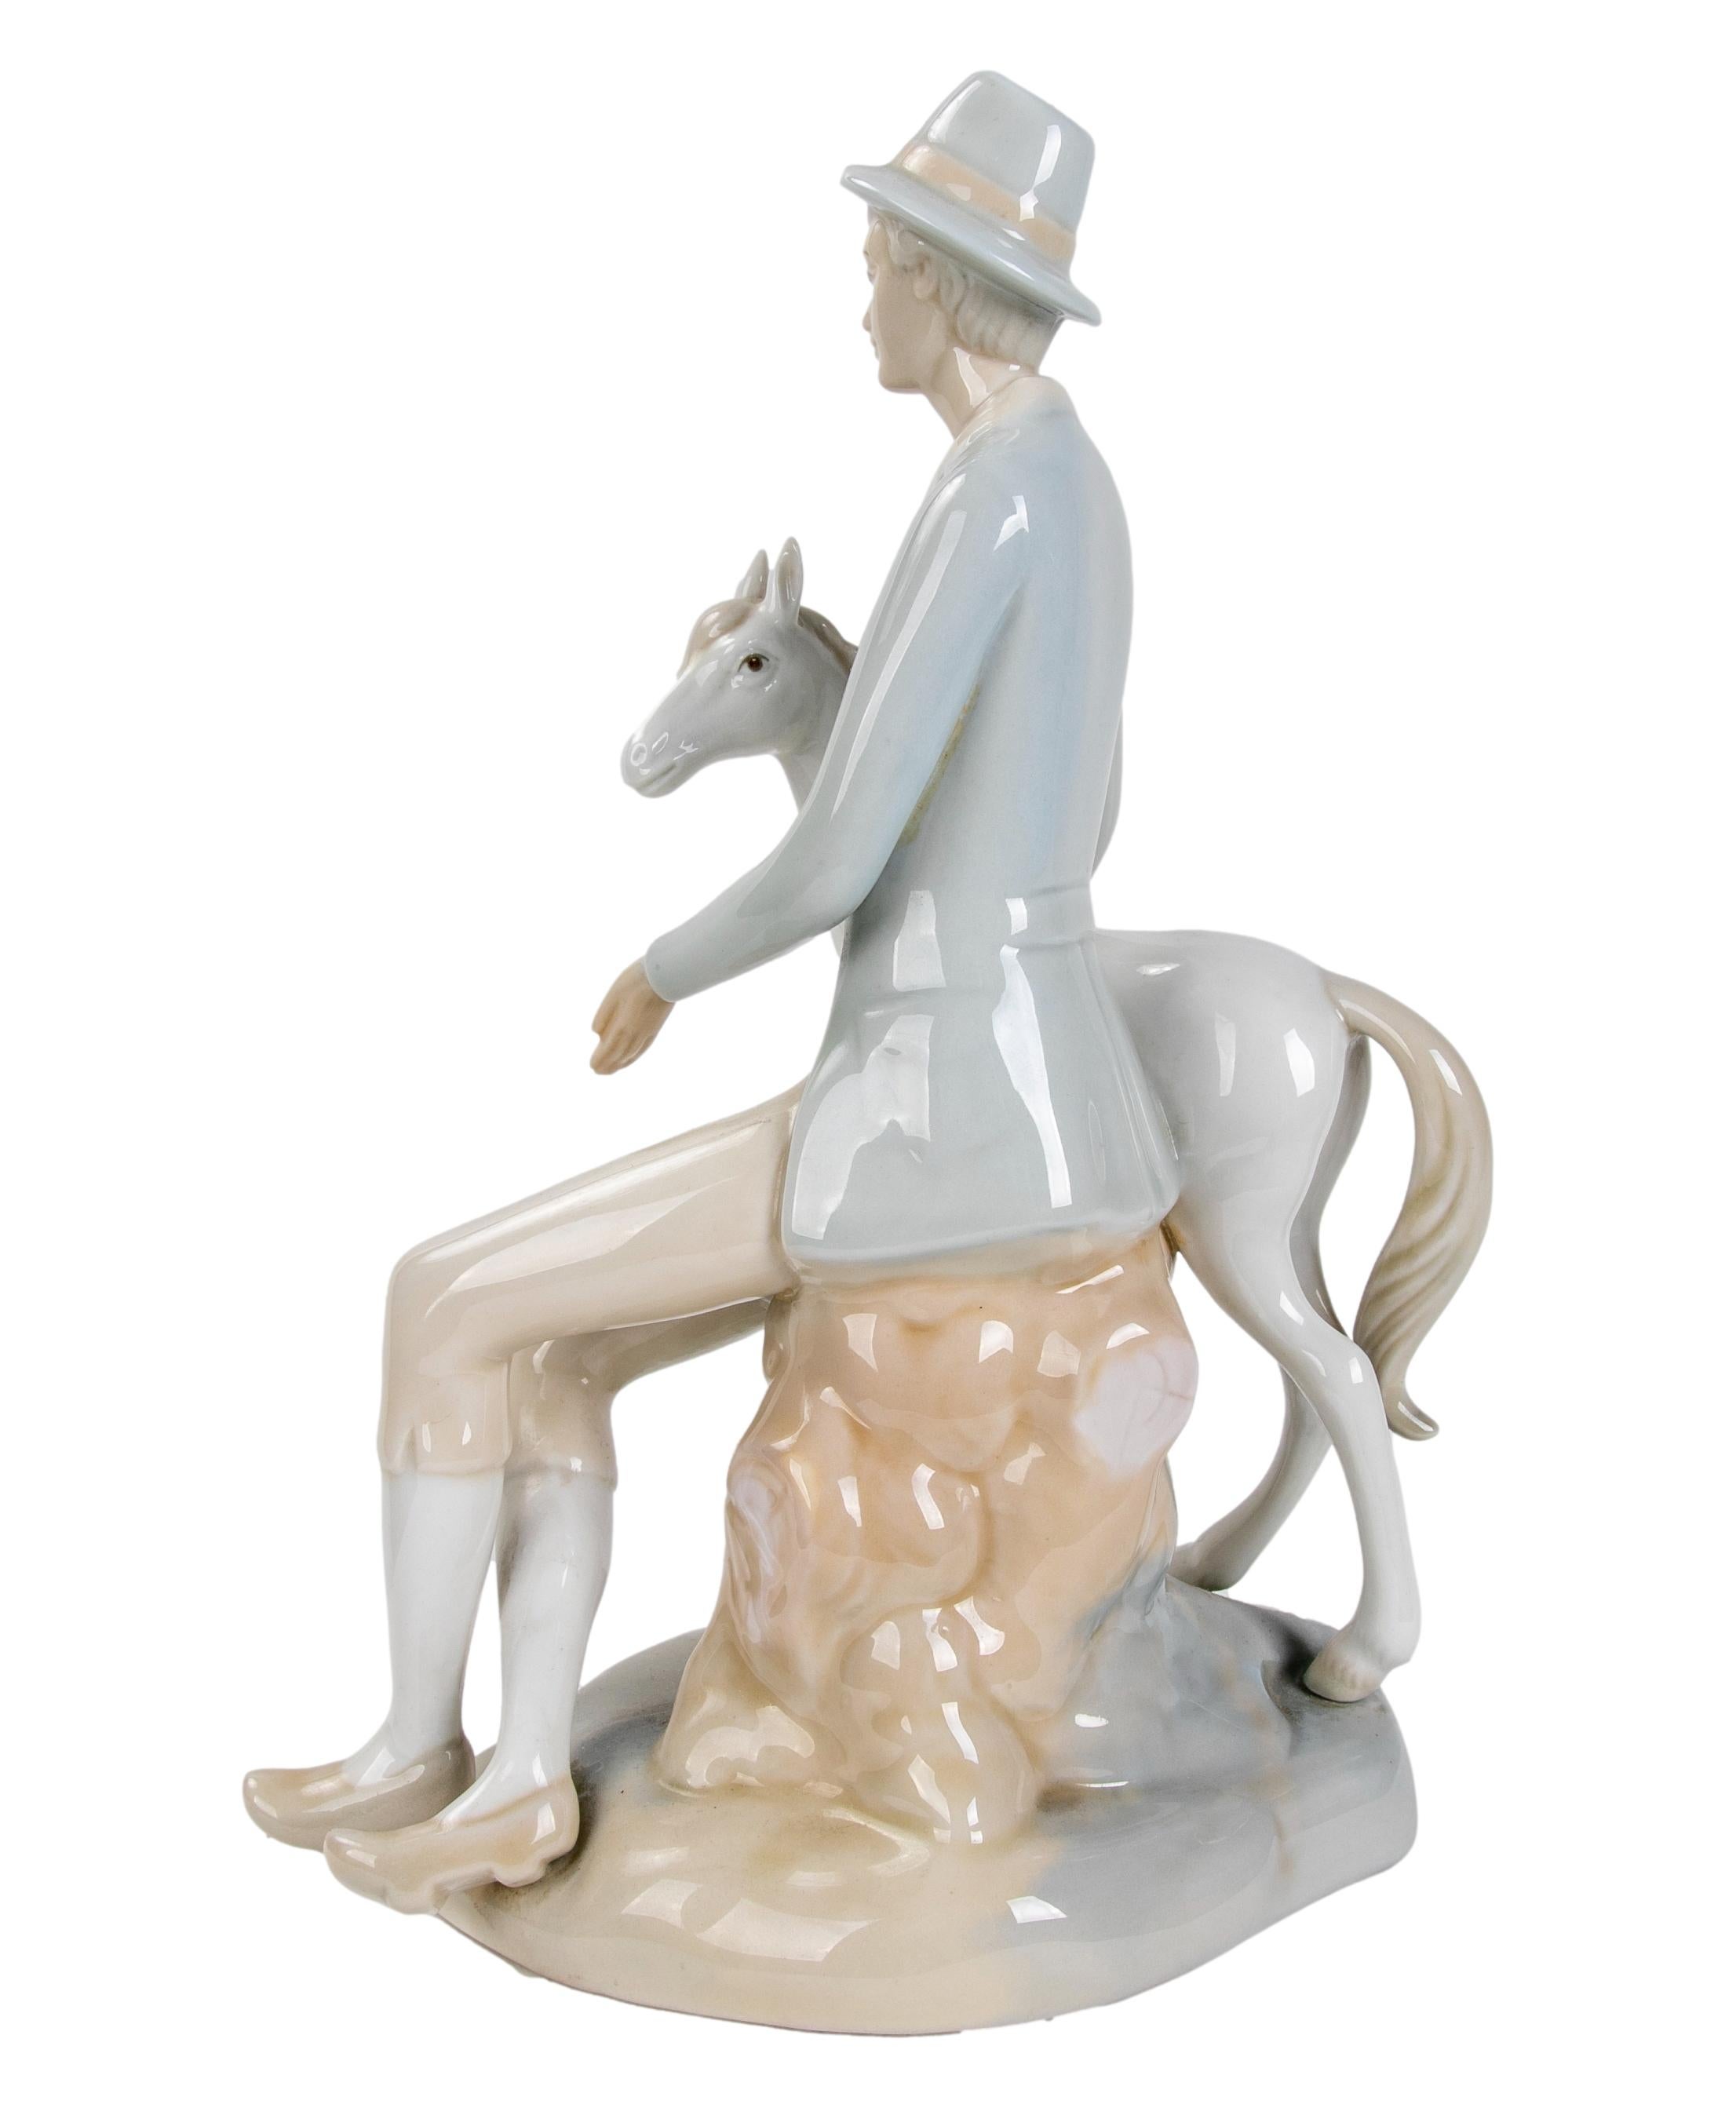 1980er Porzellanfigur von LLadro 
Er hat einen kleinen Bruch im Hut.